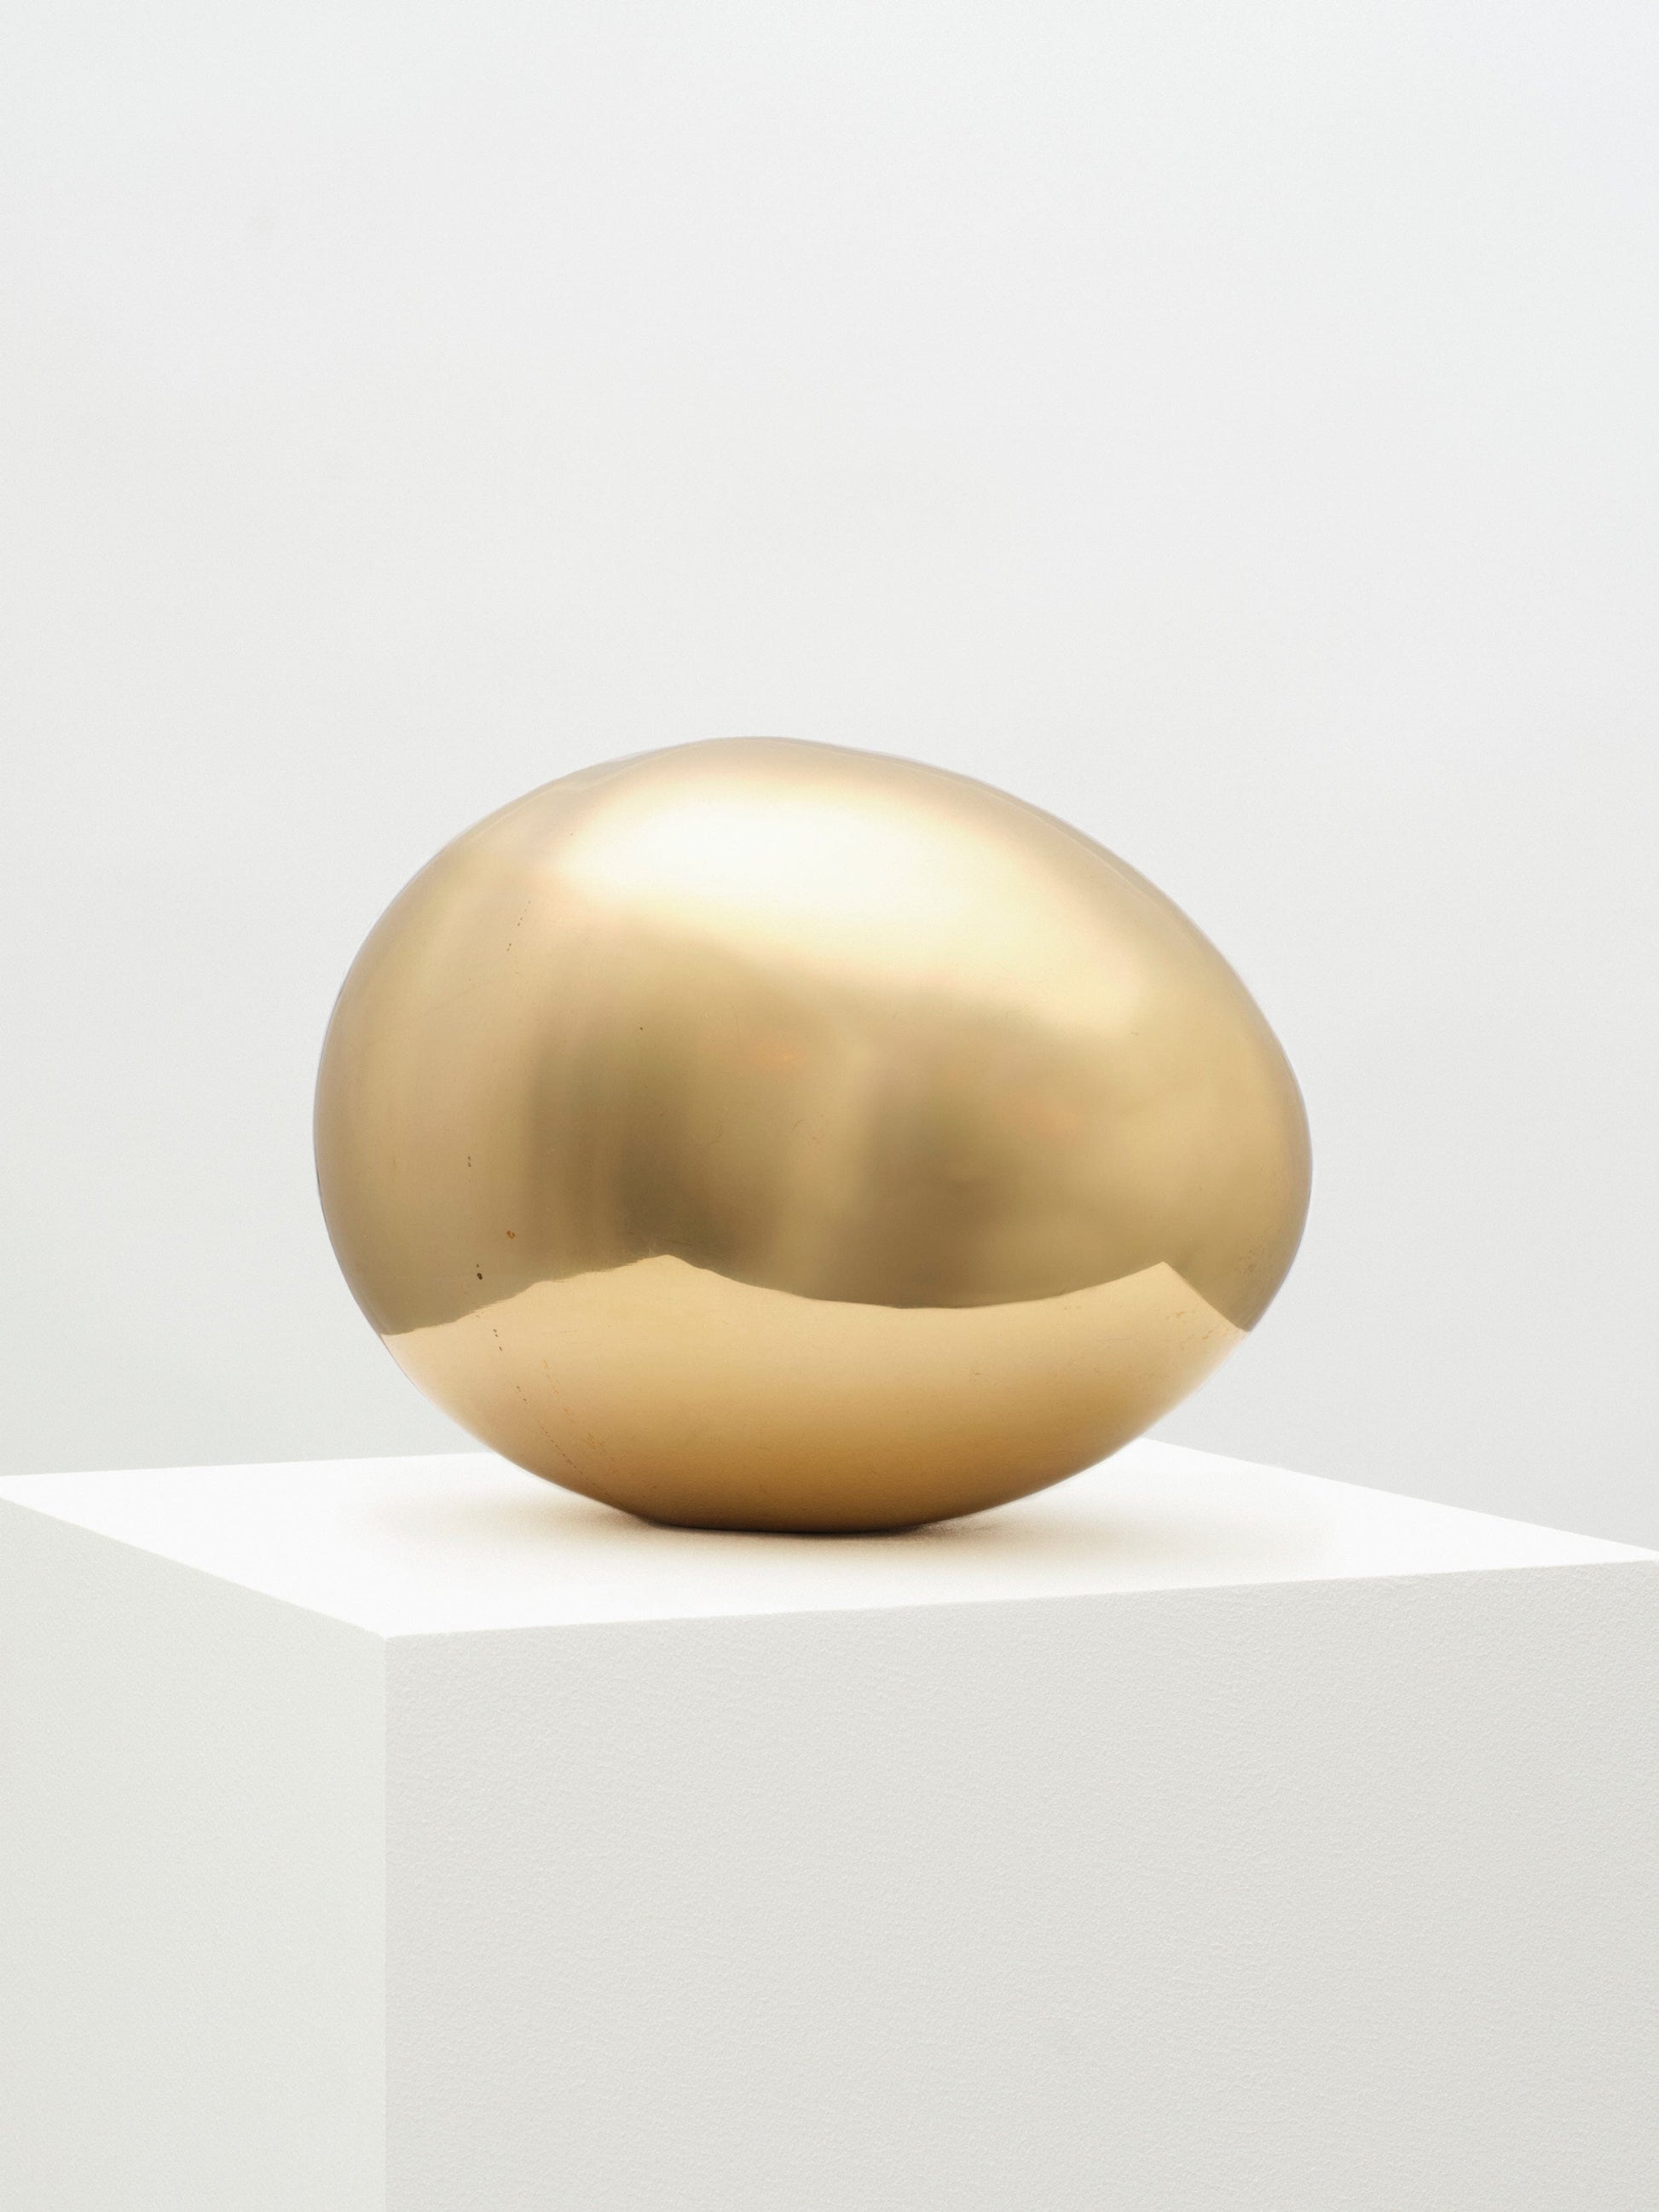 Brass Egg Sculpture sculptures